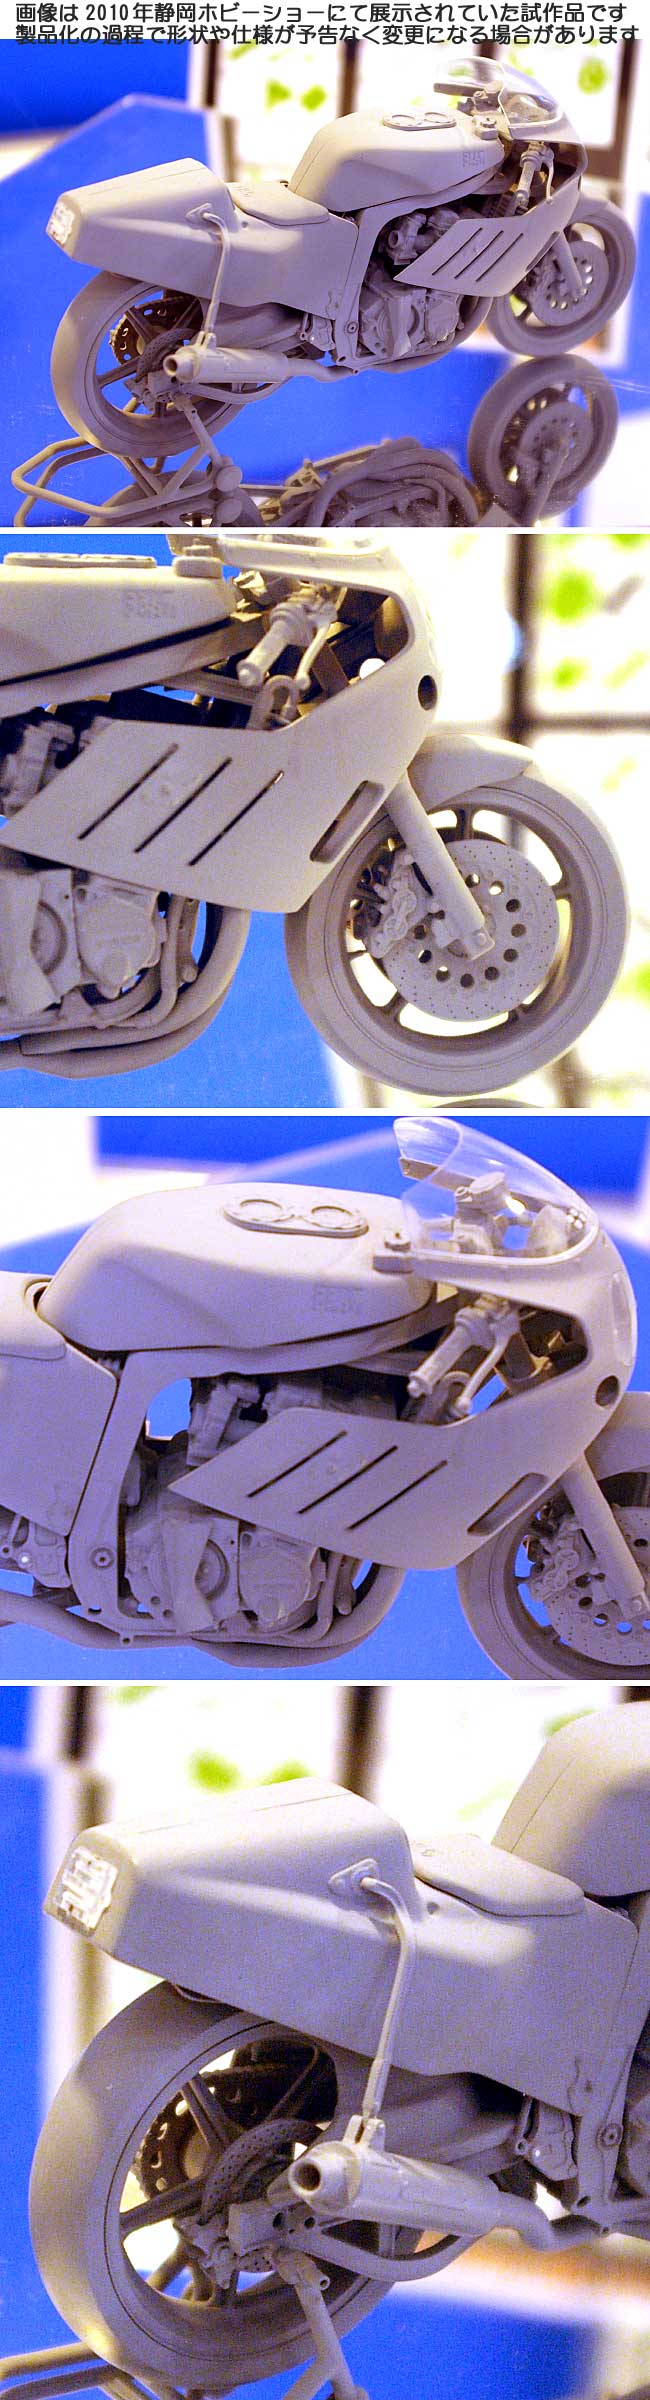 ヨシムラ・スズキ GSX-R750 1986年 鈴鹿8耐レース仕様 プラモデル (フジミ 1/12 オートバイ シリーズ No.002) 商品画像_2